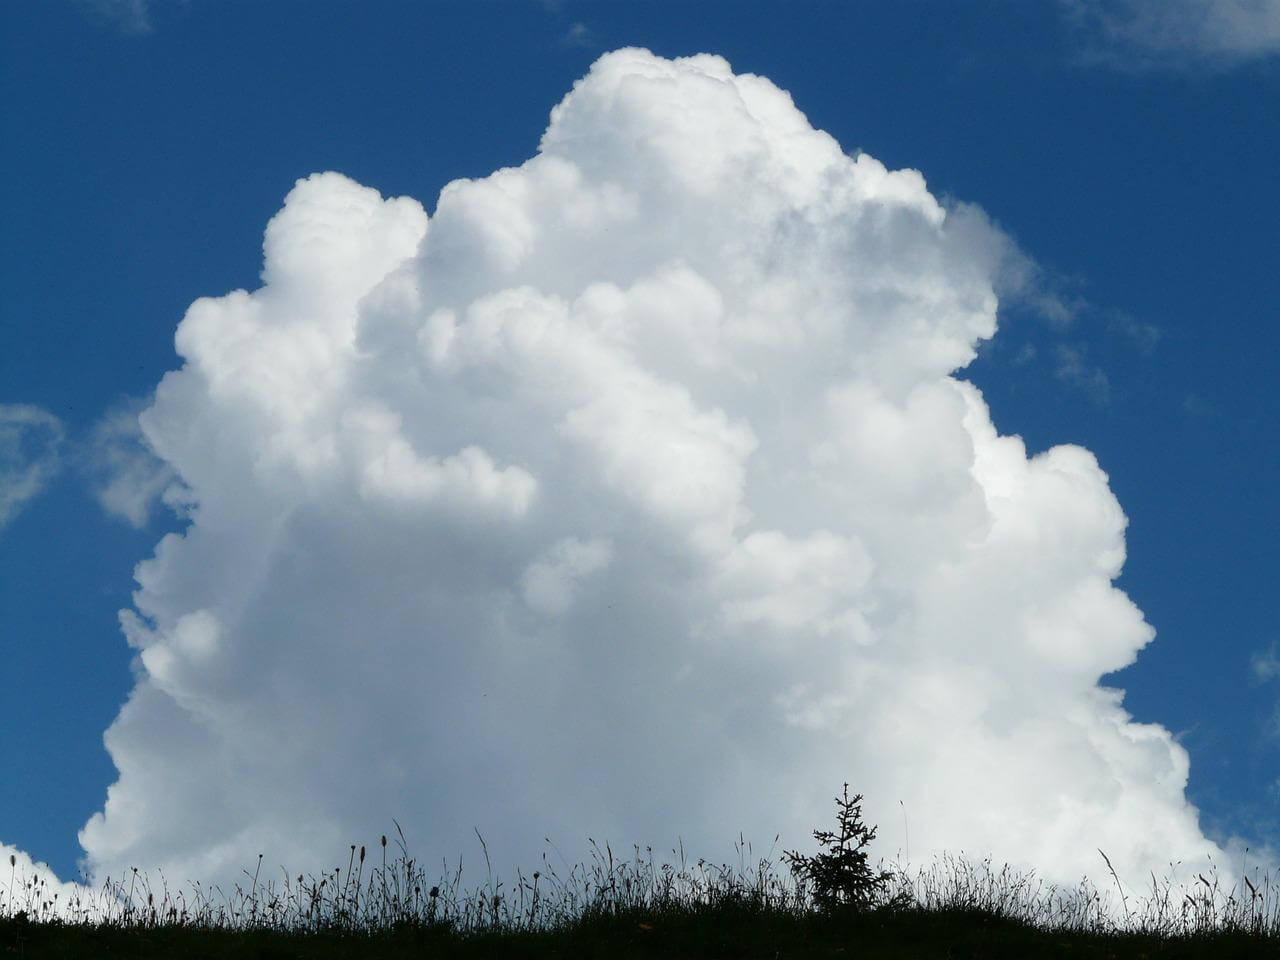 Quellwolken am Himmel © pixabay.com